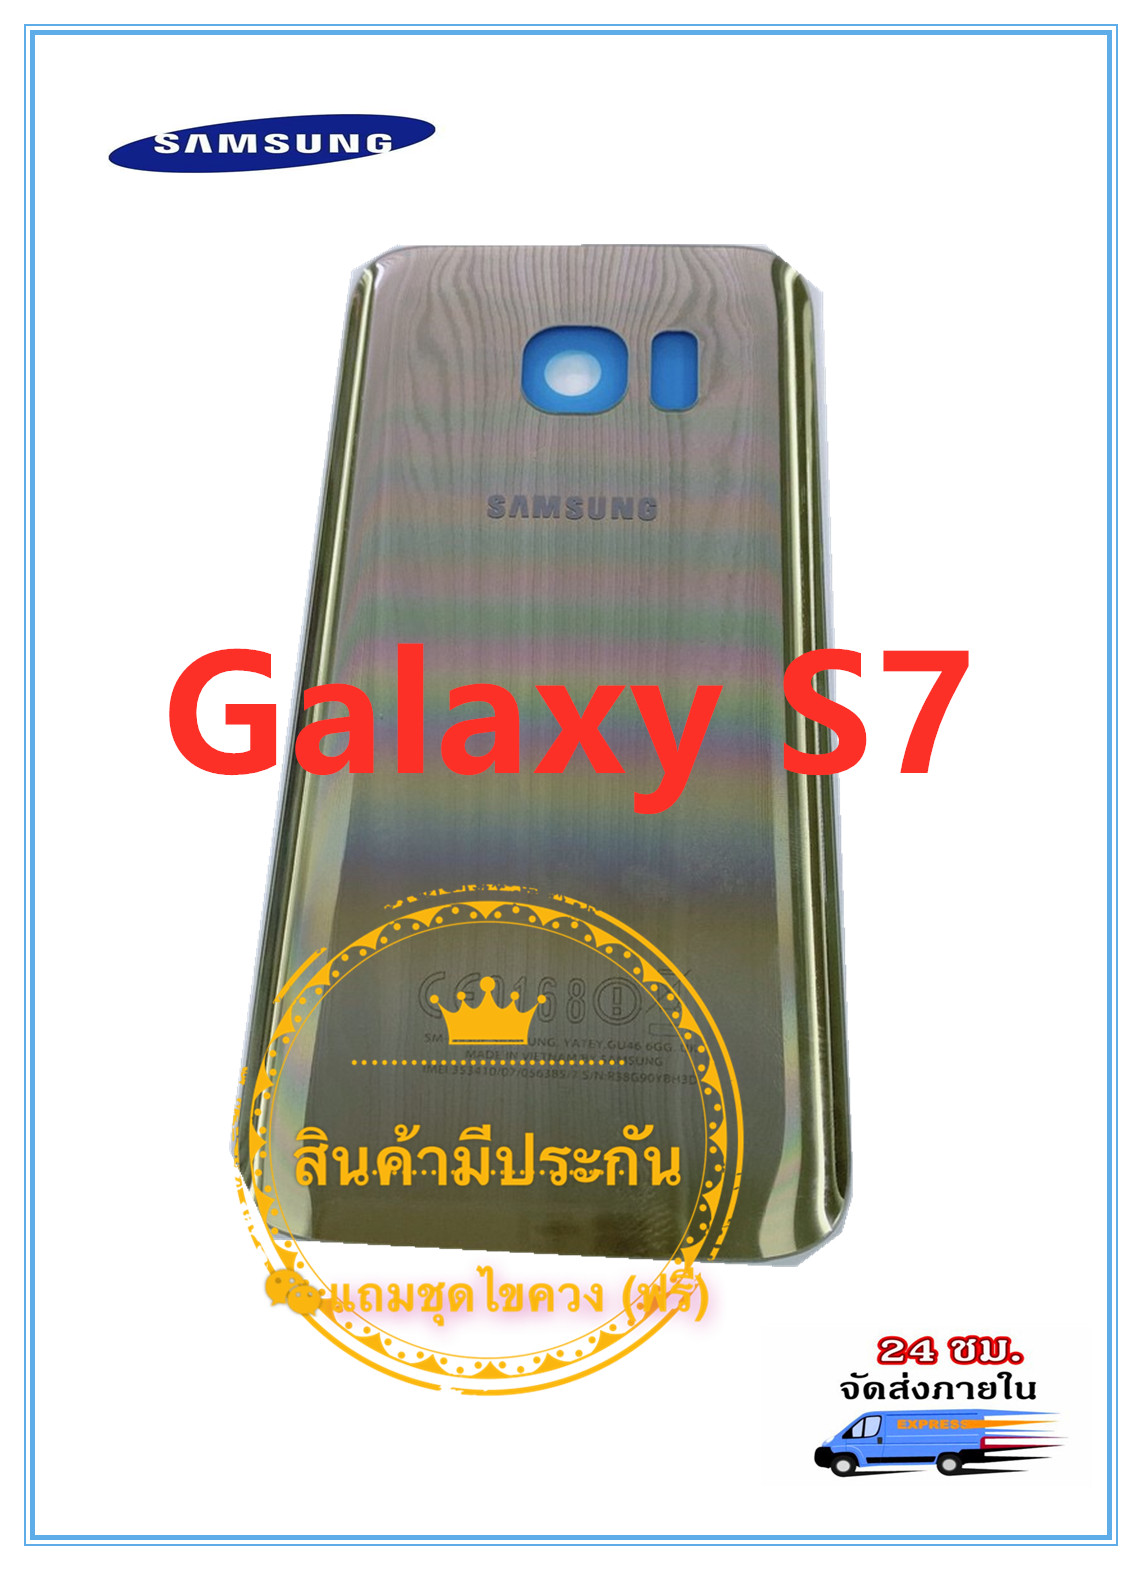 ฝาหลัง Samsung Galaxy S7 แถมฟรีชุดไขควง สี ทอง สี ทองรูปแบบรุ่นที่ีรองรับ Galaxy S7